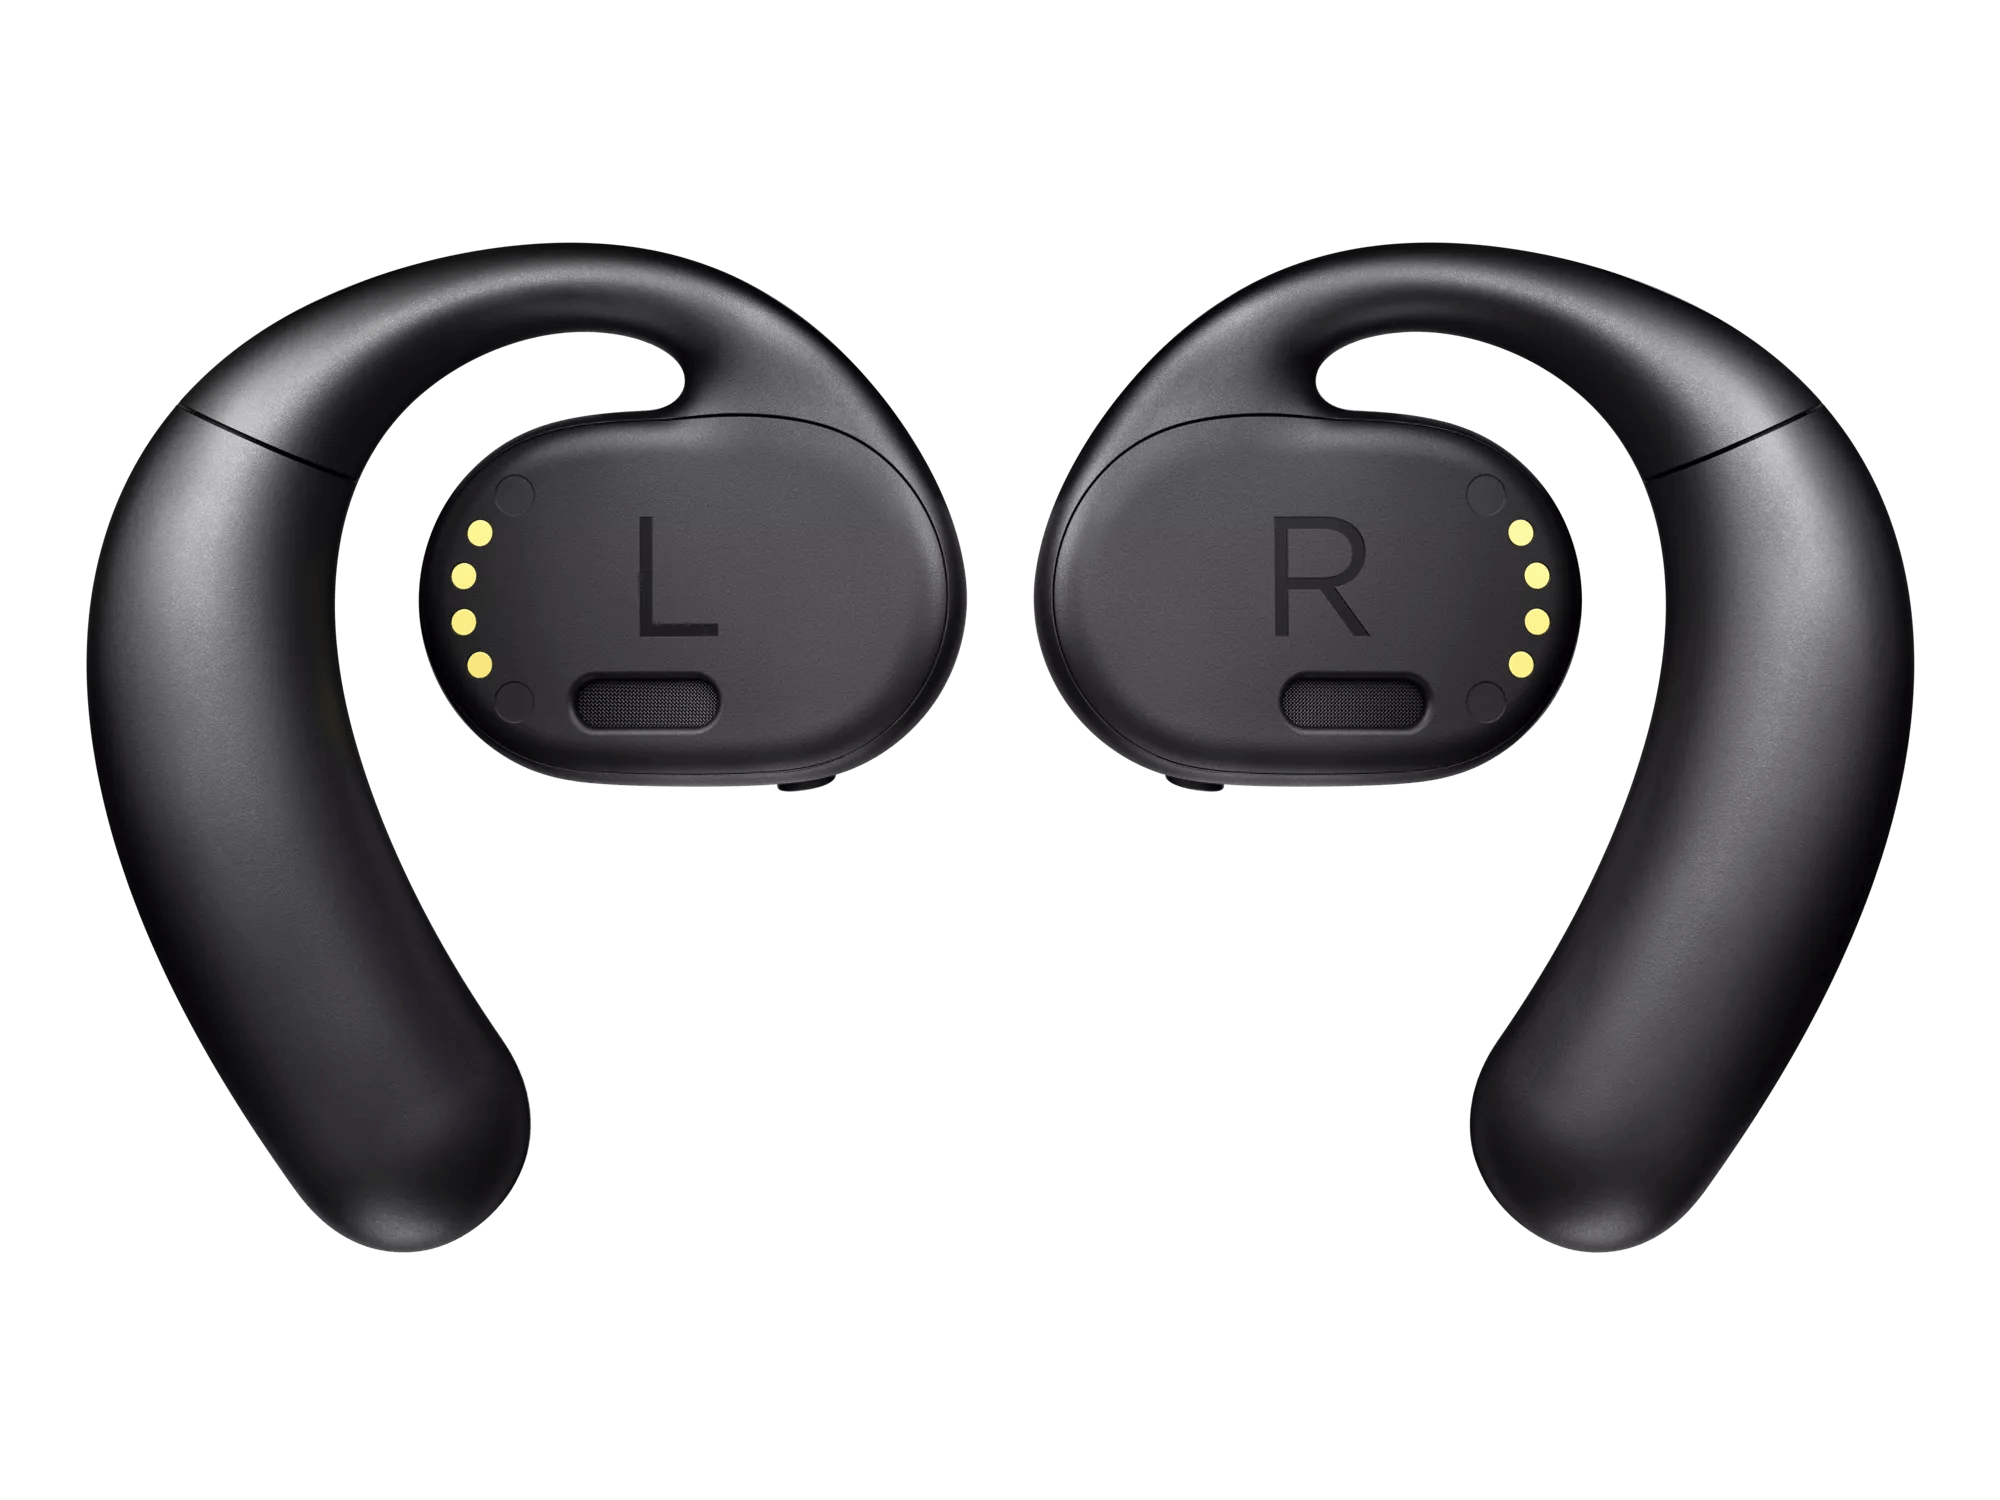 Bose Sport Open Earbuds